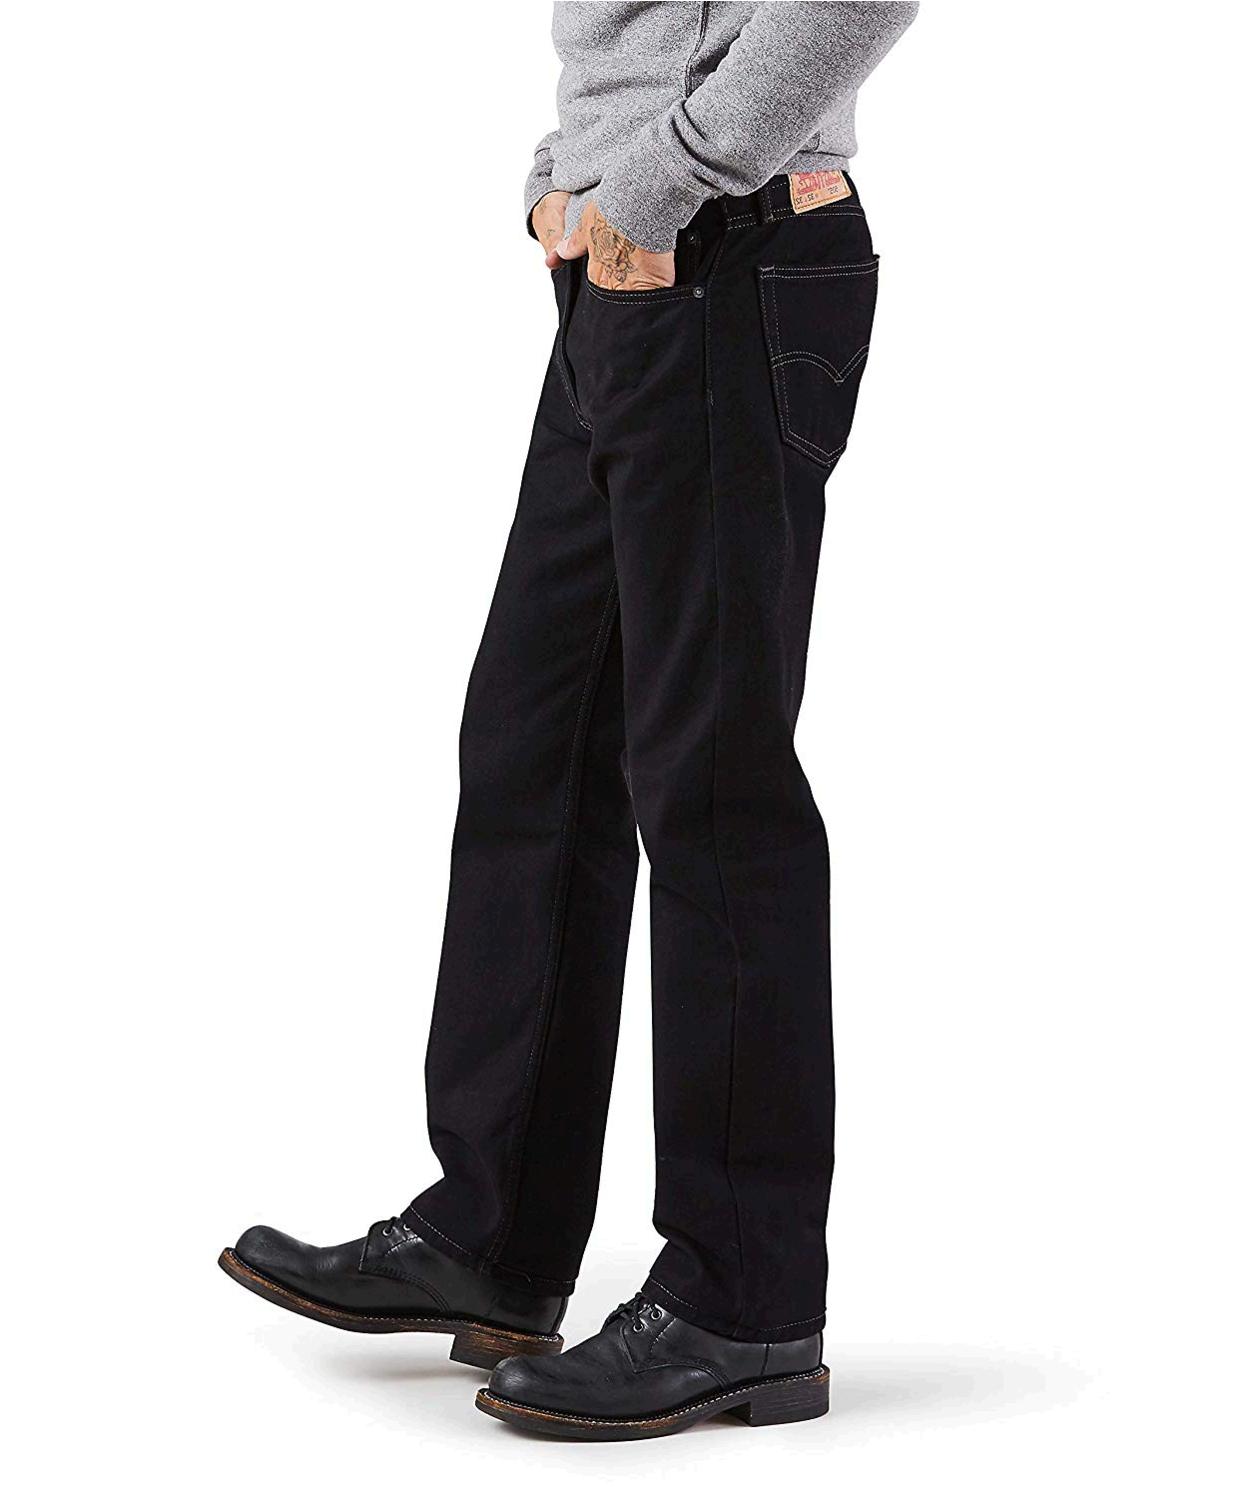 Levi's Men's 505 Regular Fit Jean, Black, 32x32, Black, Size 32W x 32L ...